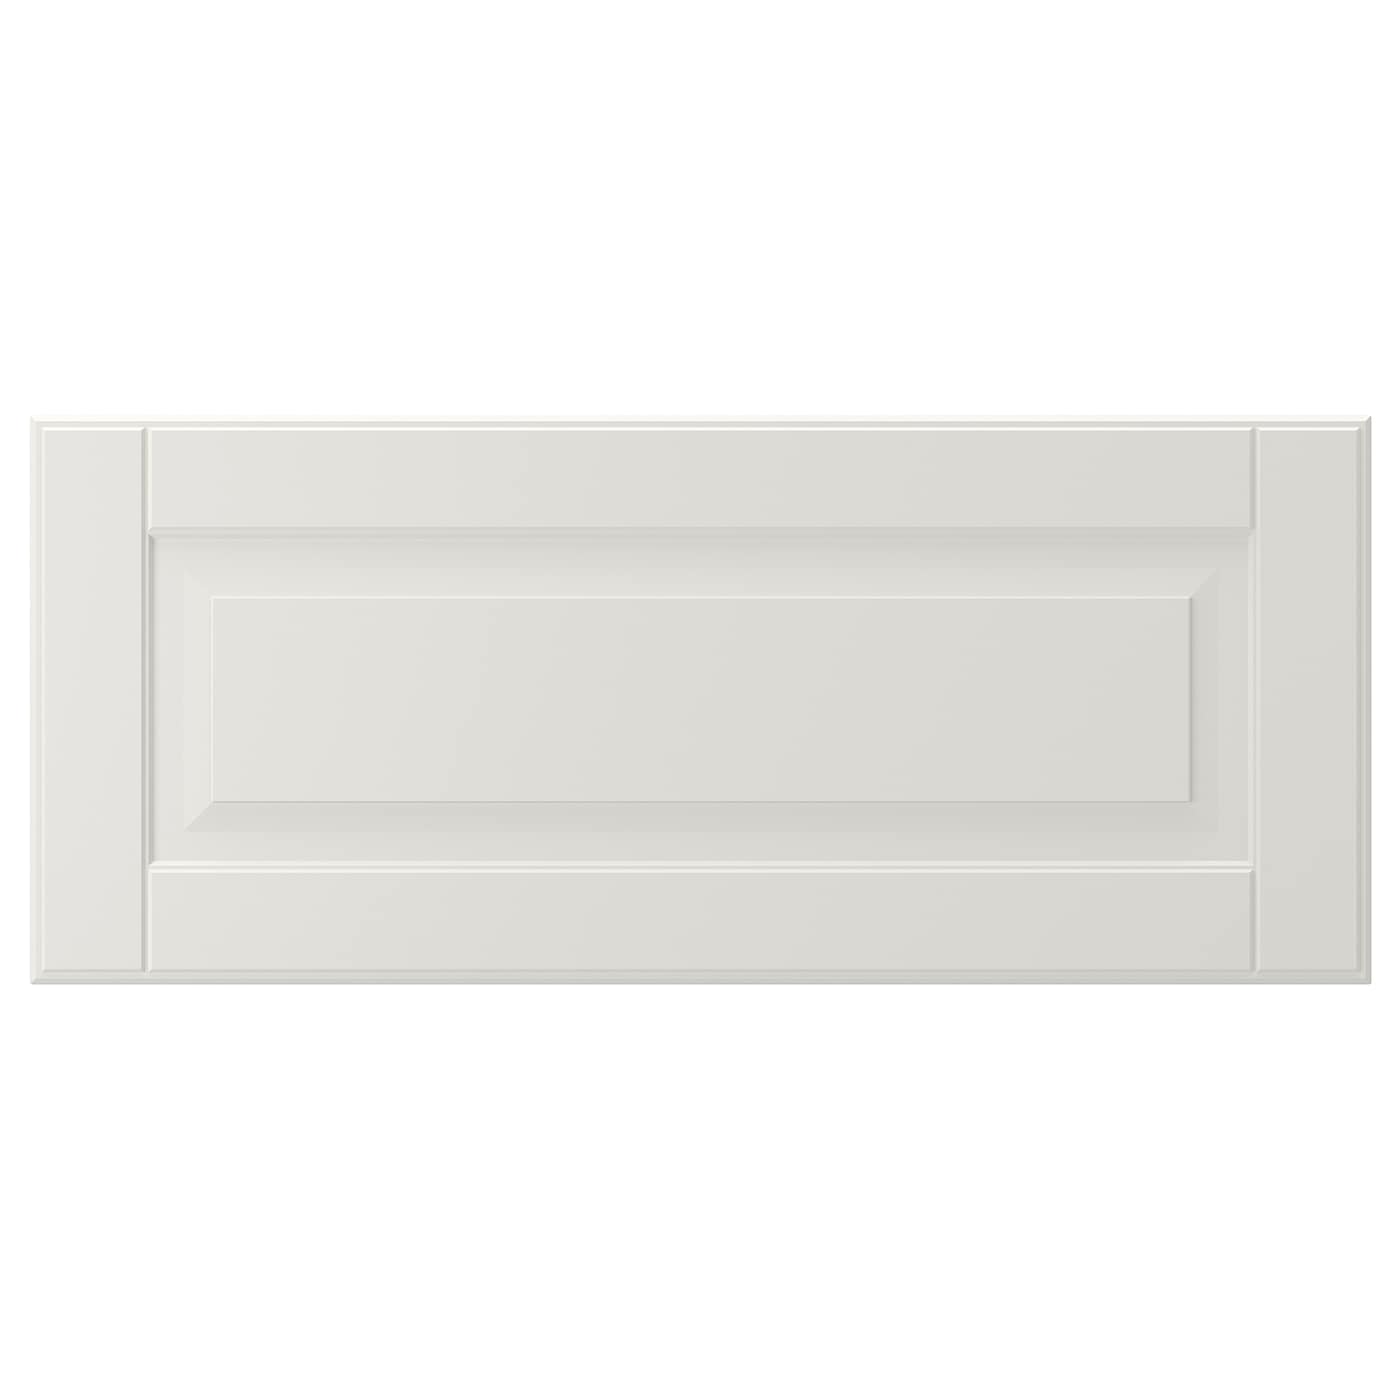 Дверца - SMEVIKEN   IKEA/ СМЕВИКЕН ИКЕА,  60x26 см, светло-серый